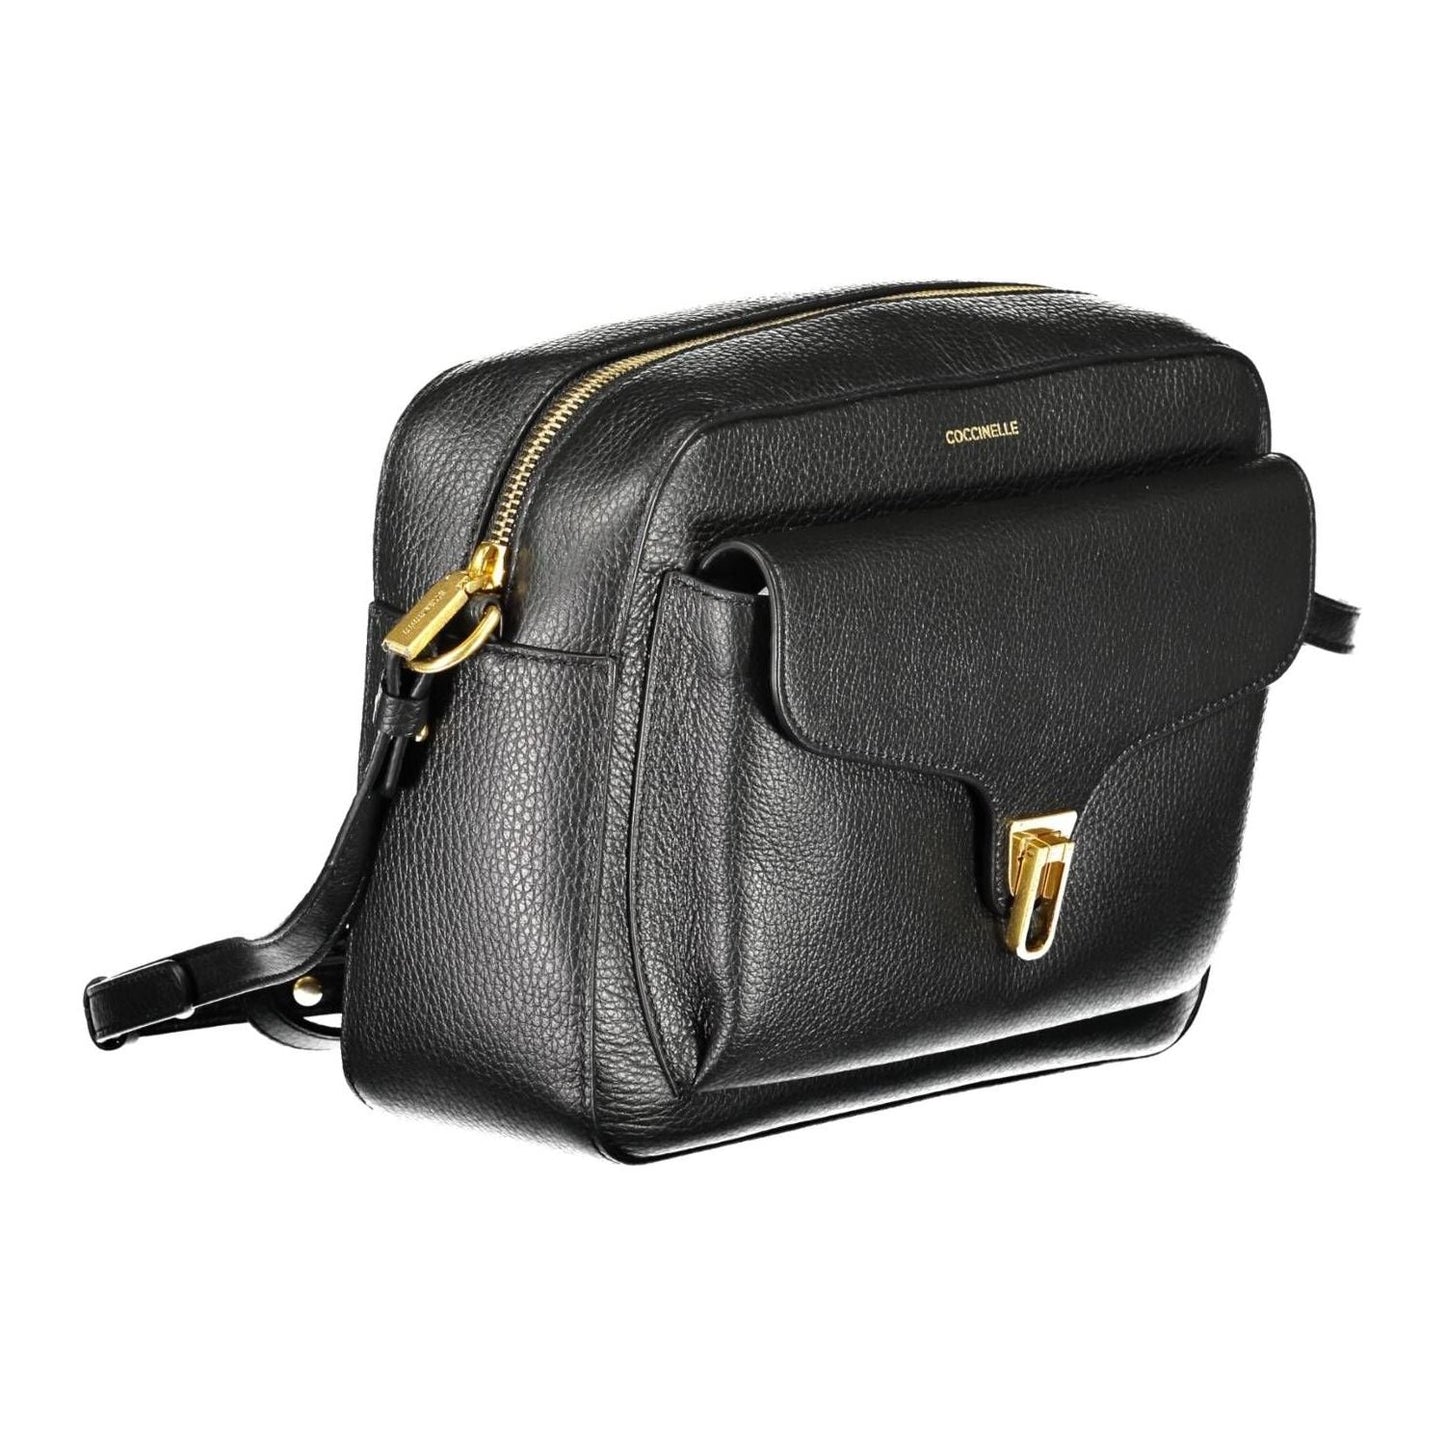 Coccinelle Elegant Black Leather Shoulder Bag elegant-black-leather-shoulder-bag-2